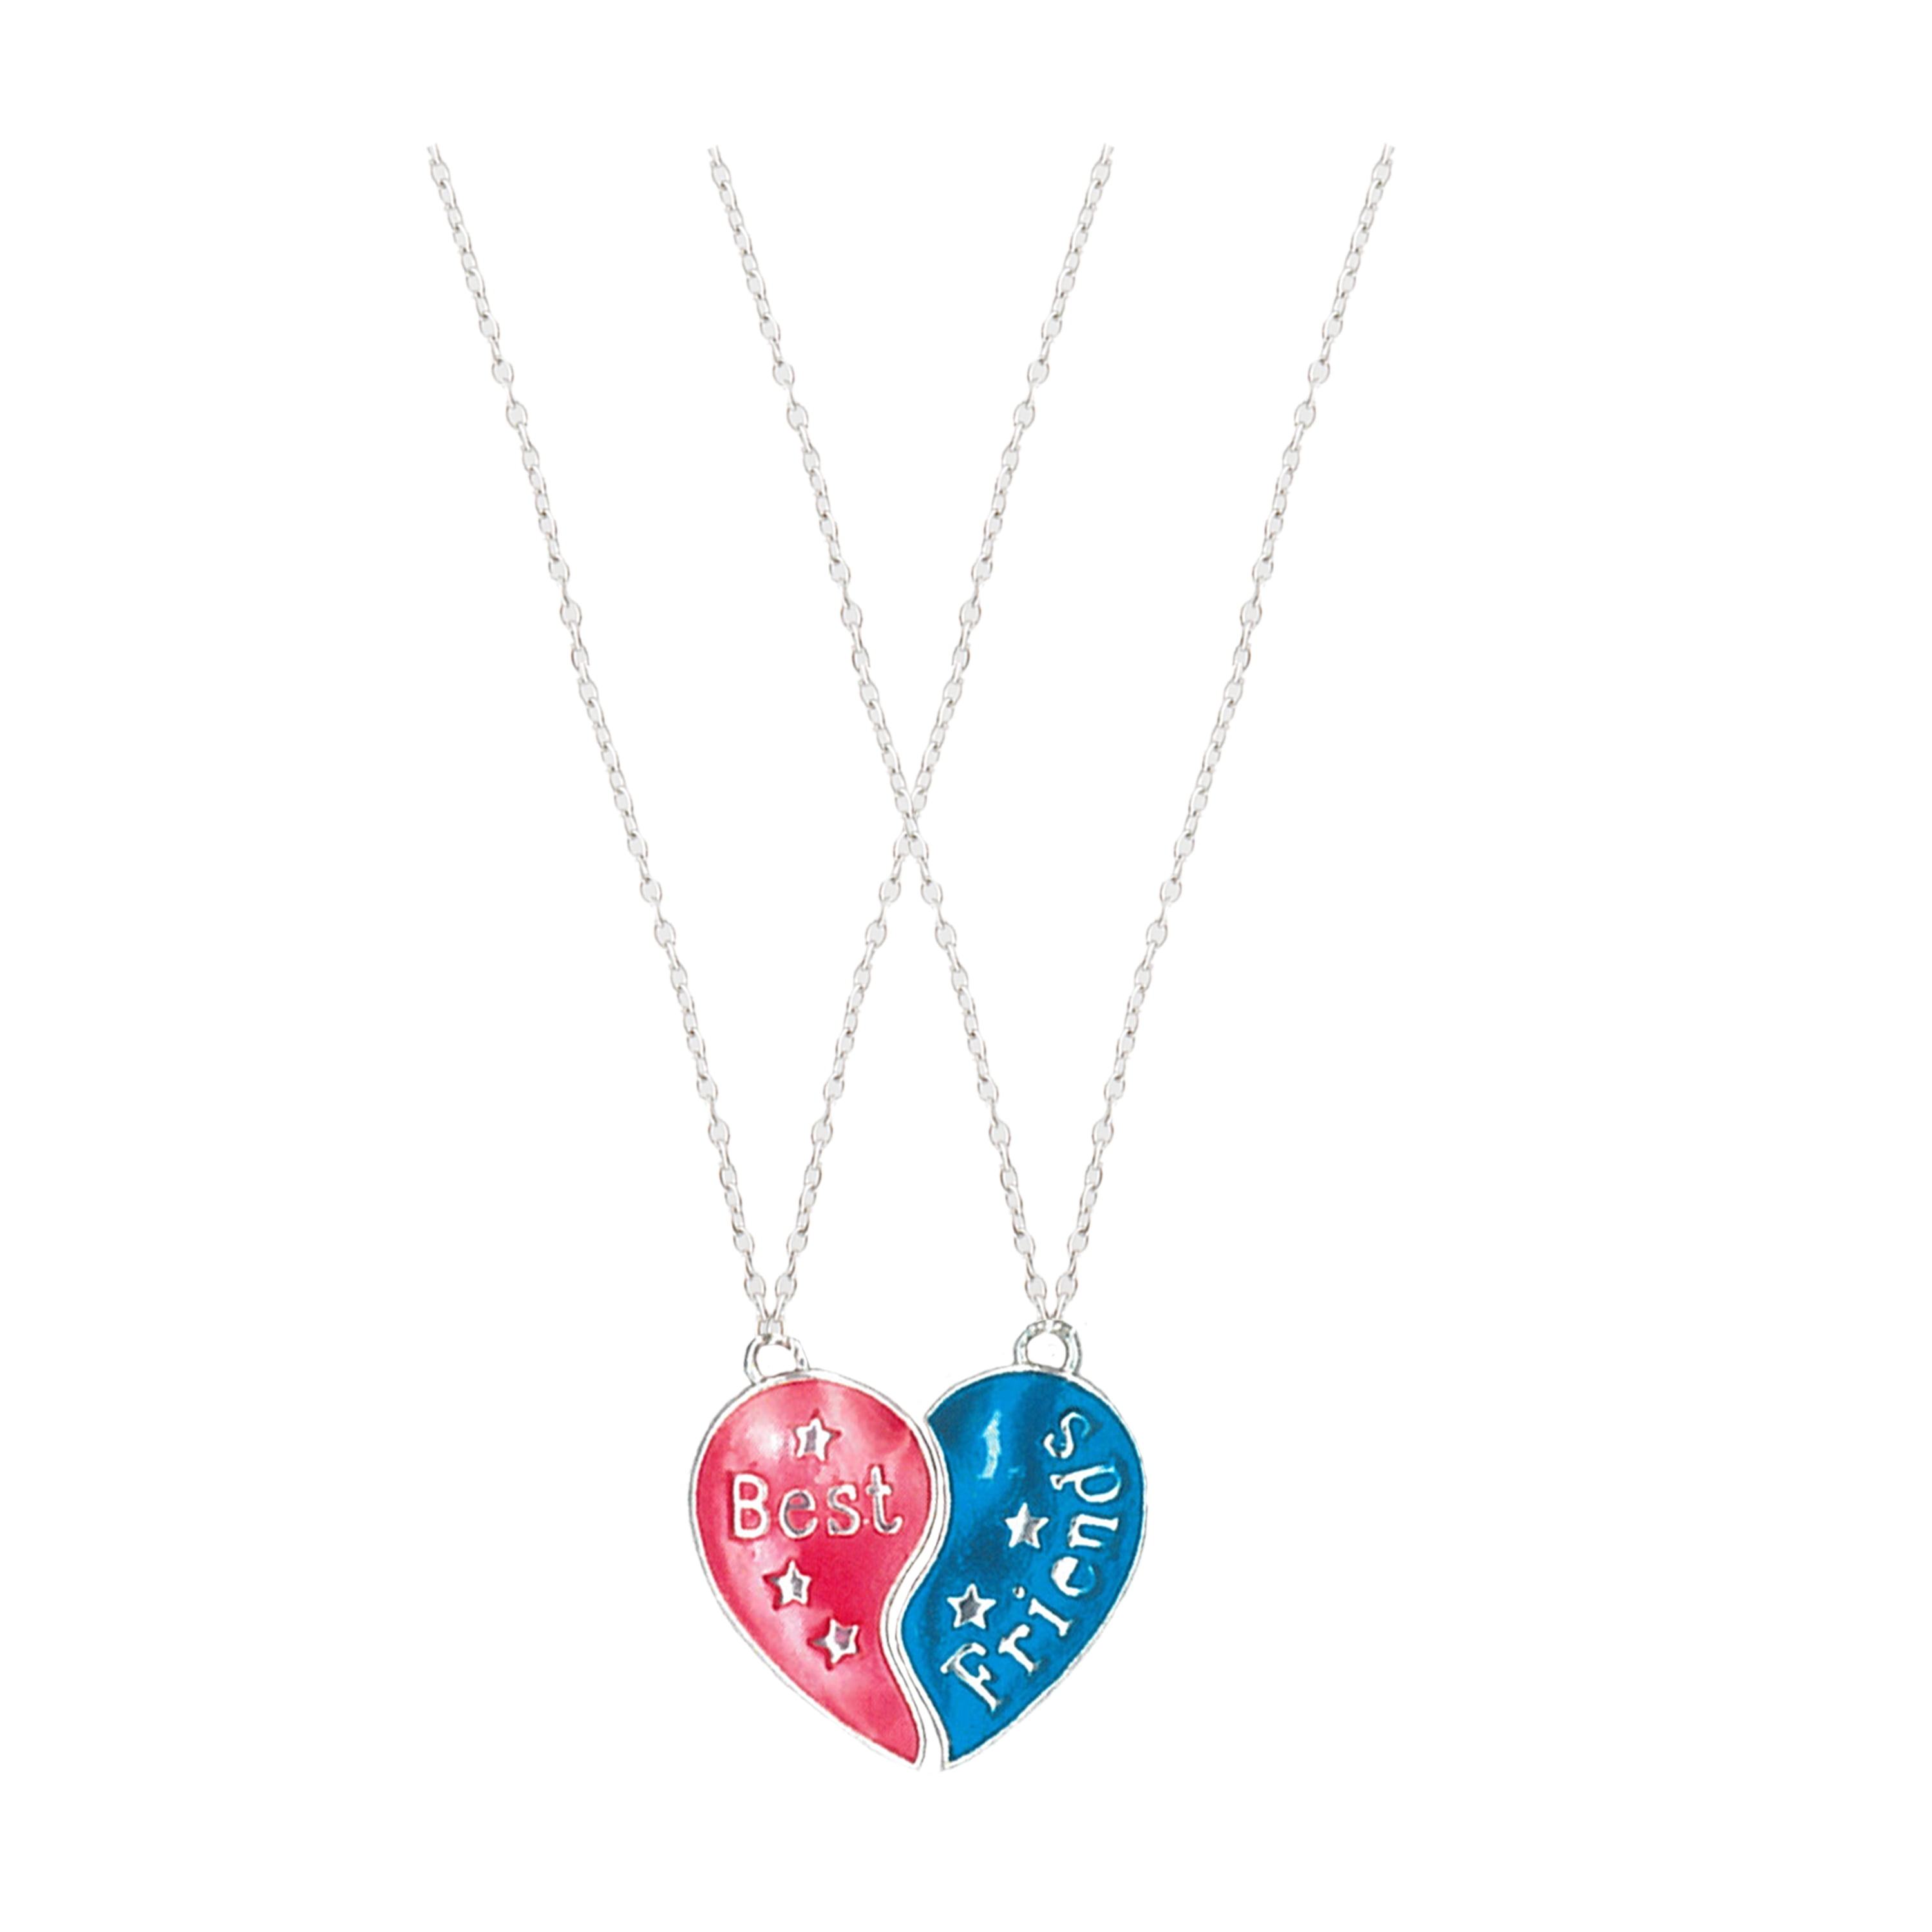 2 Piece Best Friend Heart Necklaces